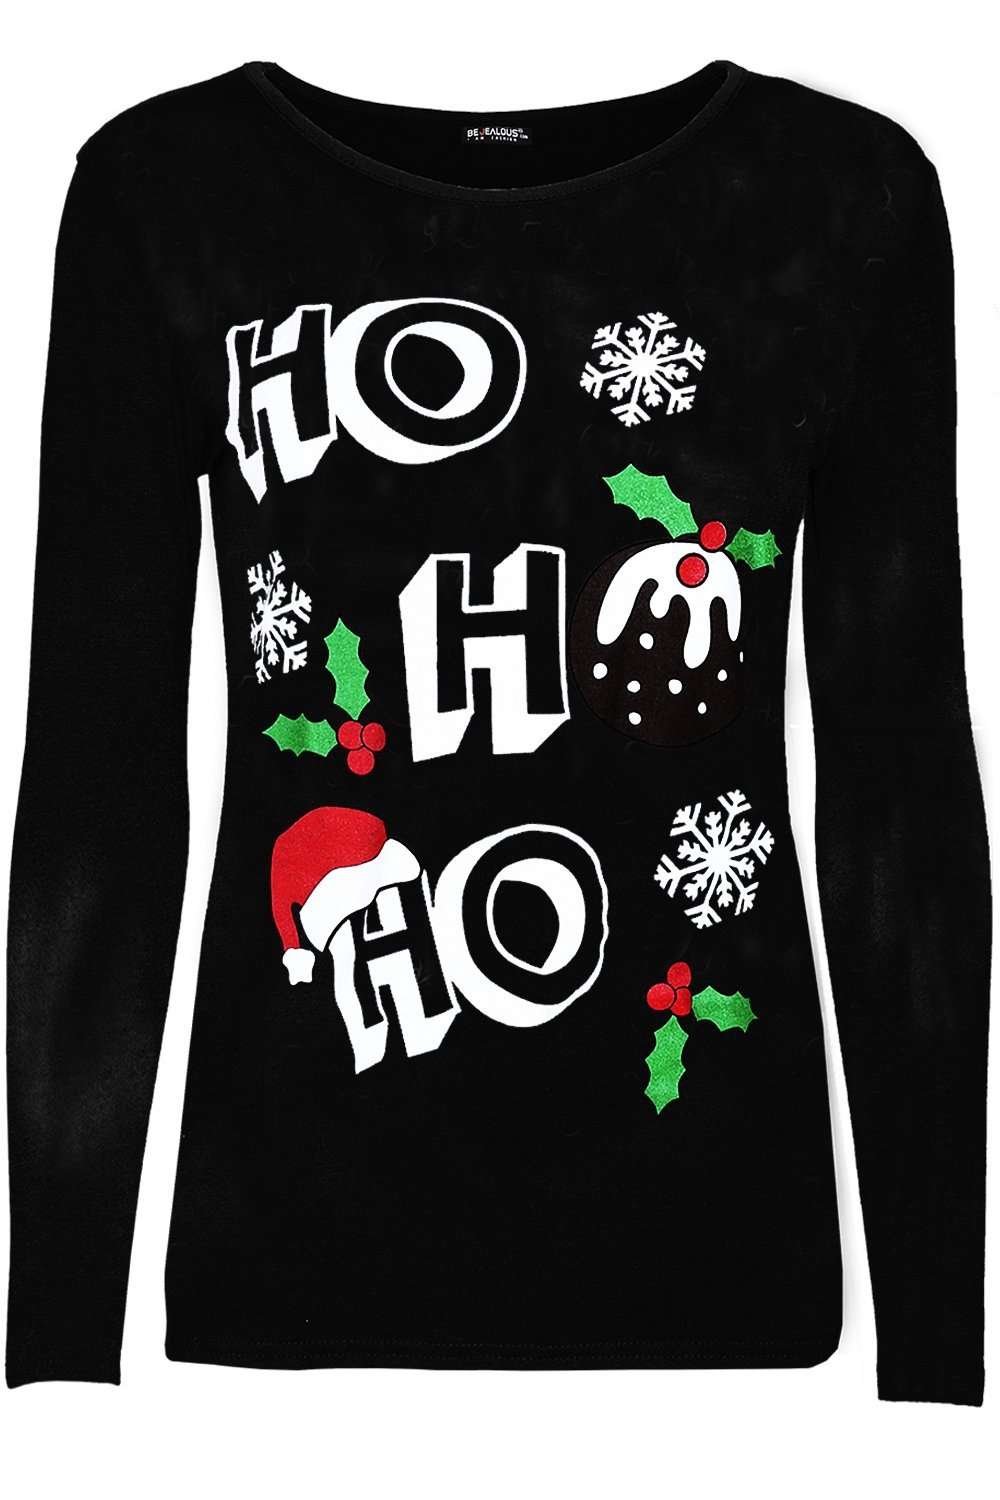 Hohoho Christmas Slogan Print Long Sleeve Tshirt - bejealous-com